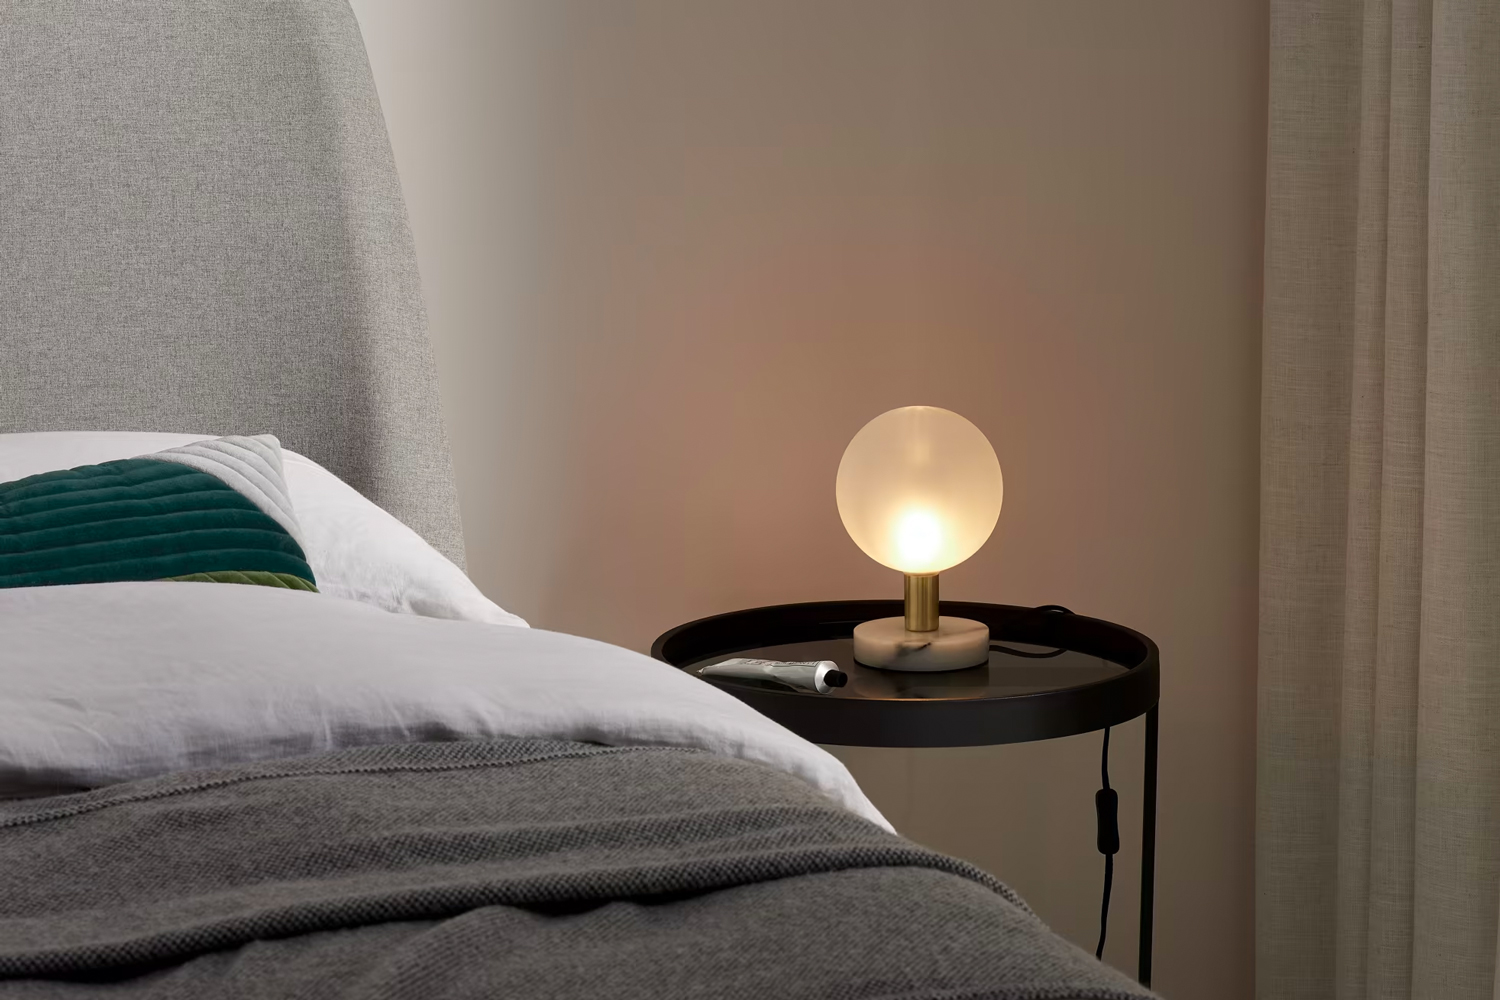 Creëer direct sfeer in je slaapkamer met de Boll tafellamp. De lamp heeft een mooie, zachte lichtverspreiding en is dankzij het witte marmer op de lamp een echte blikvanger. 